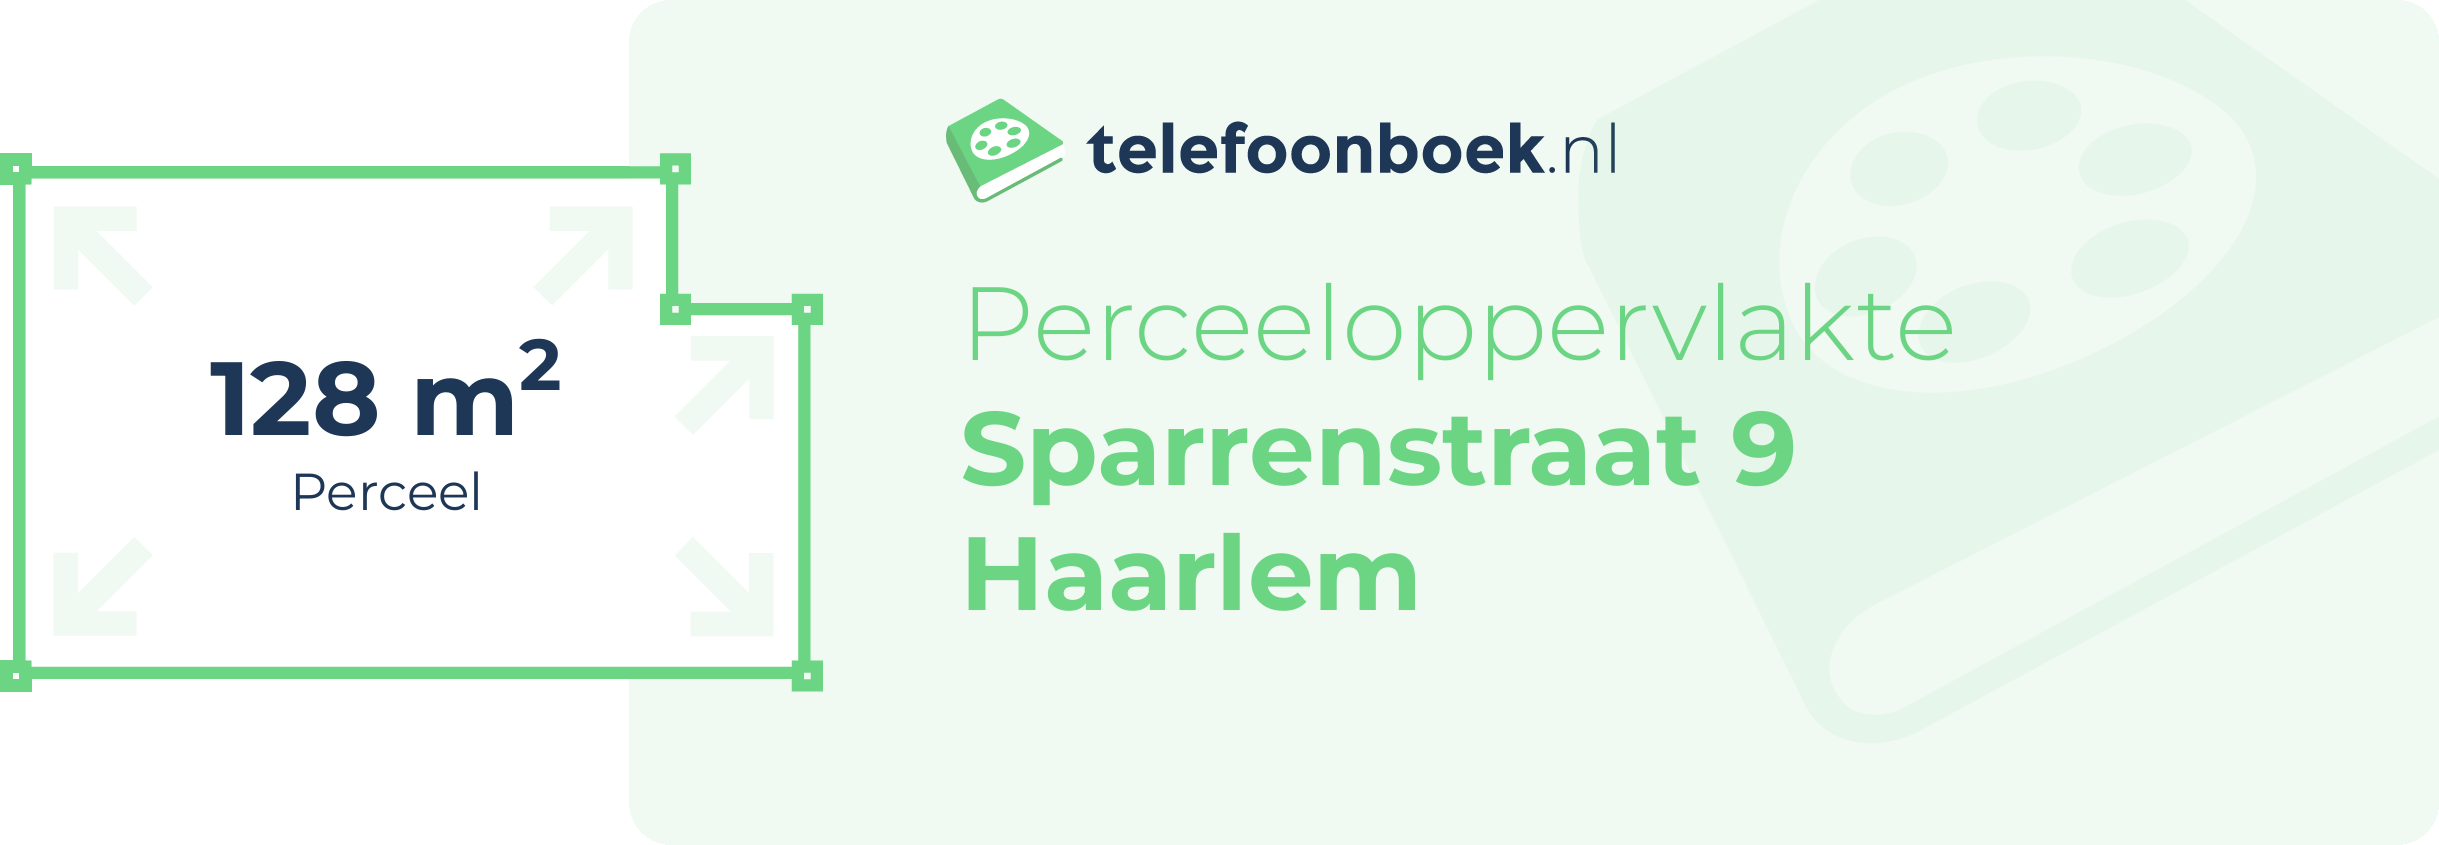 Perceeloppervlakte Sparrenstraat 9 Haarlem